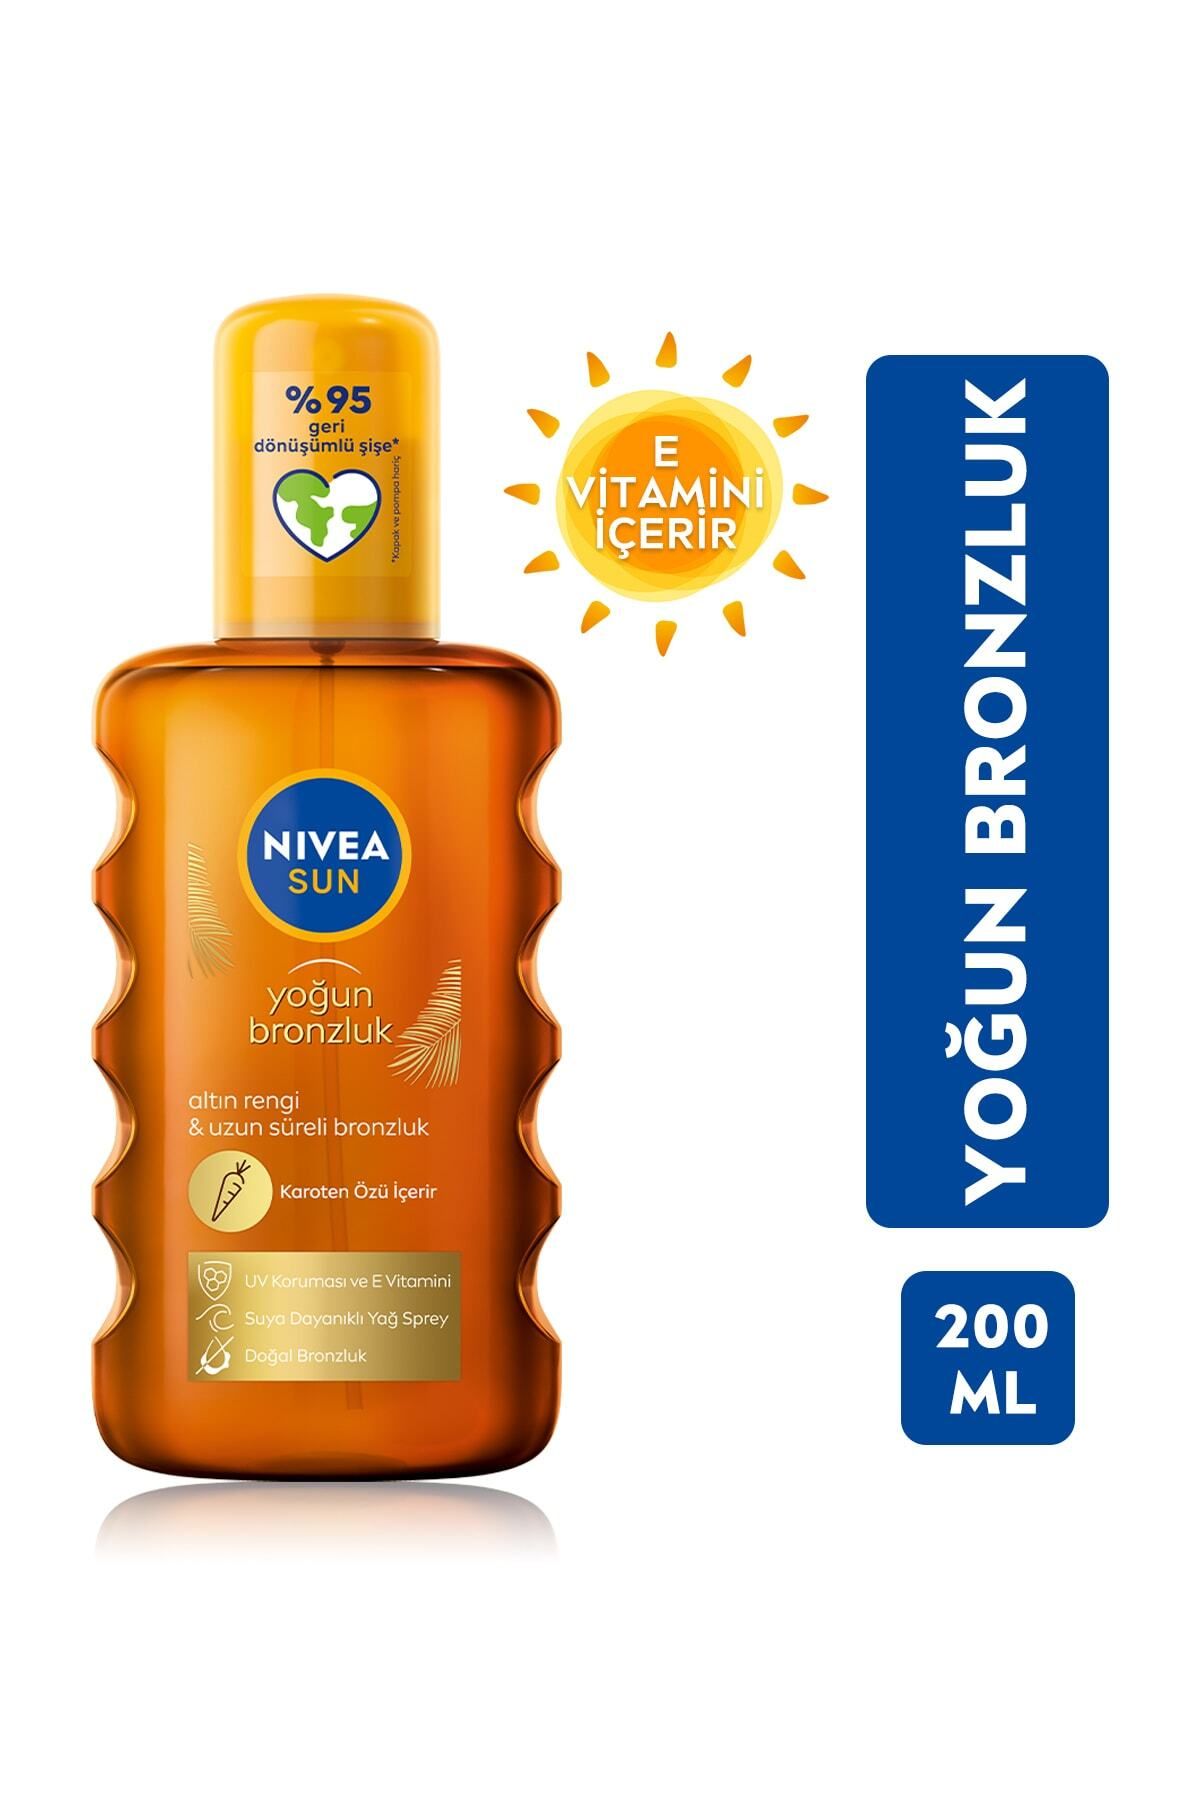 NIVEA Sun Spf 6 Yoğun Bronzlaştırıcı Güneş Yağ Sprey 200ml,karoten Özlü,e Vitamini Içerir